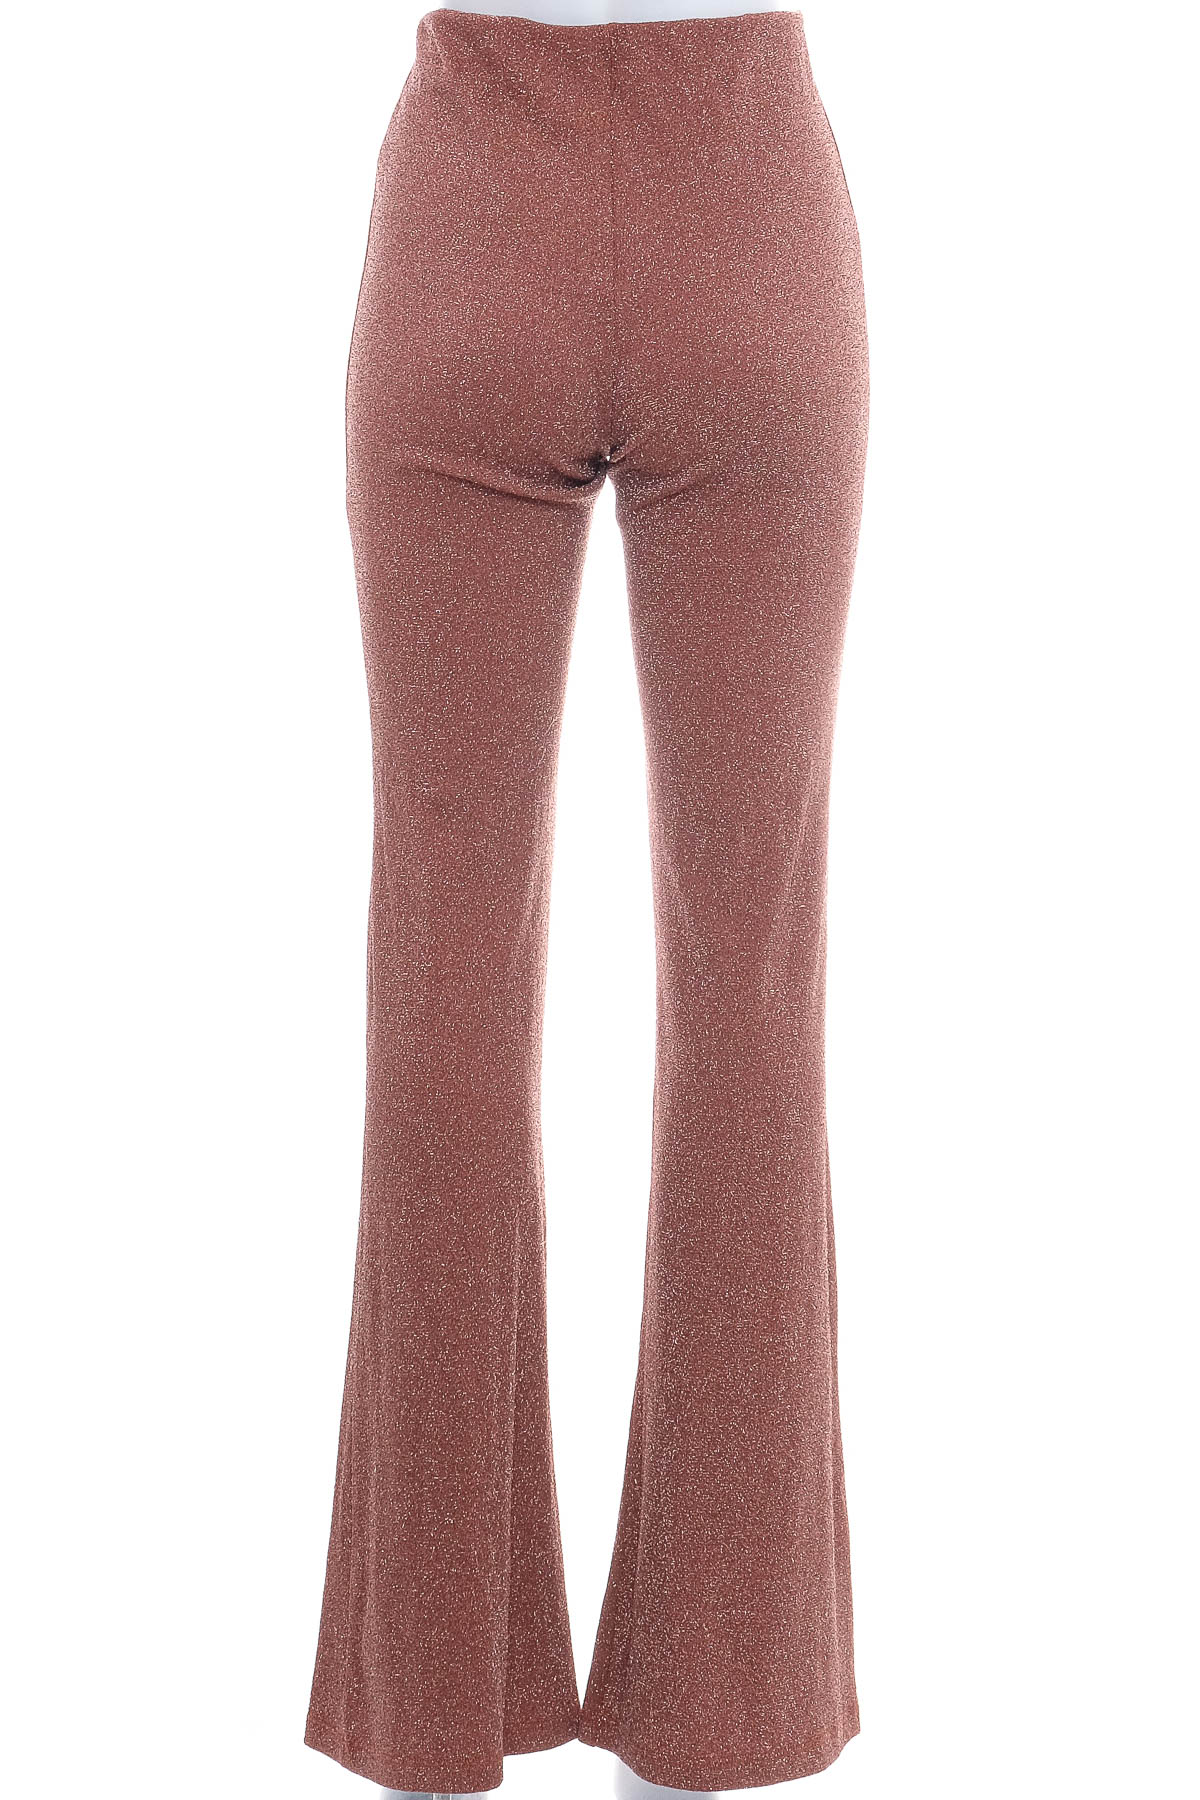 Women's trousers - SoAllure - 1